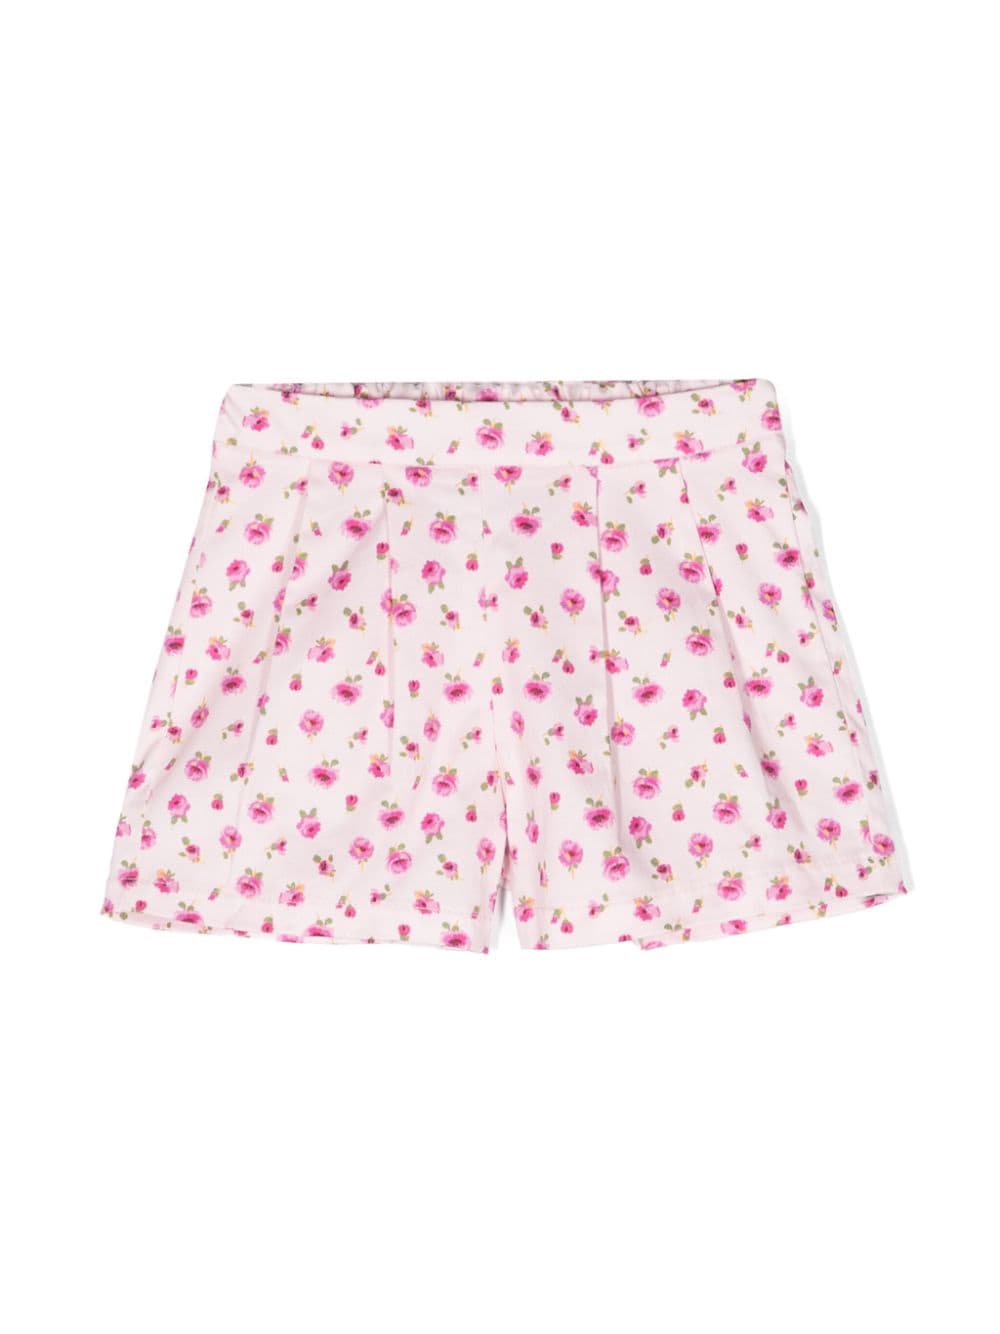 Shorts rosa neonata